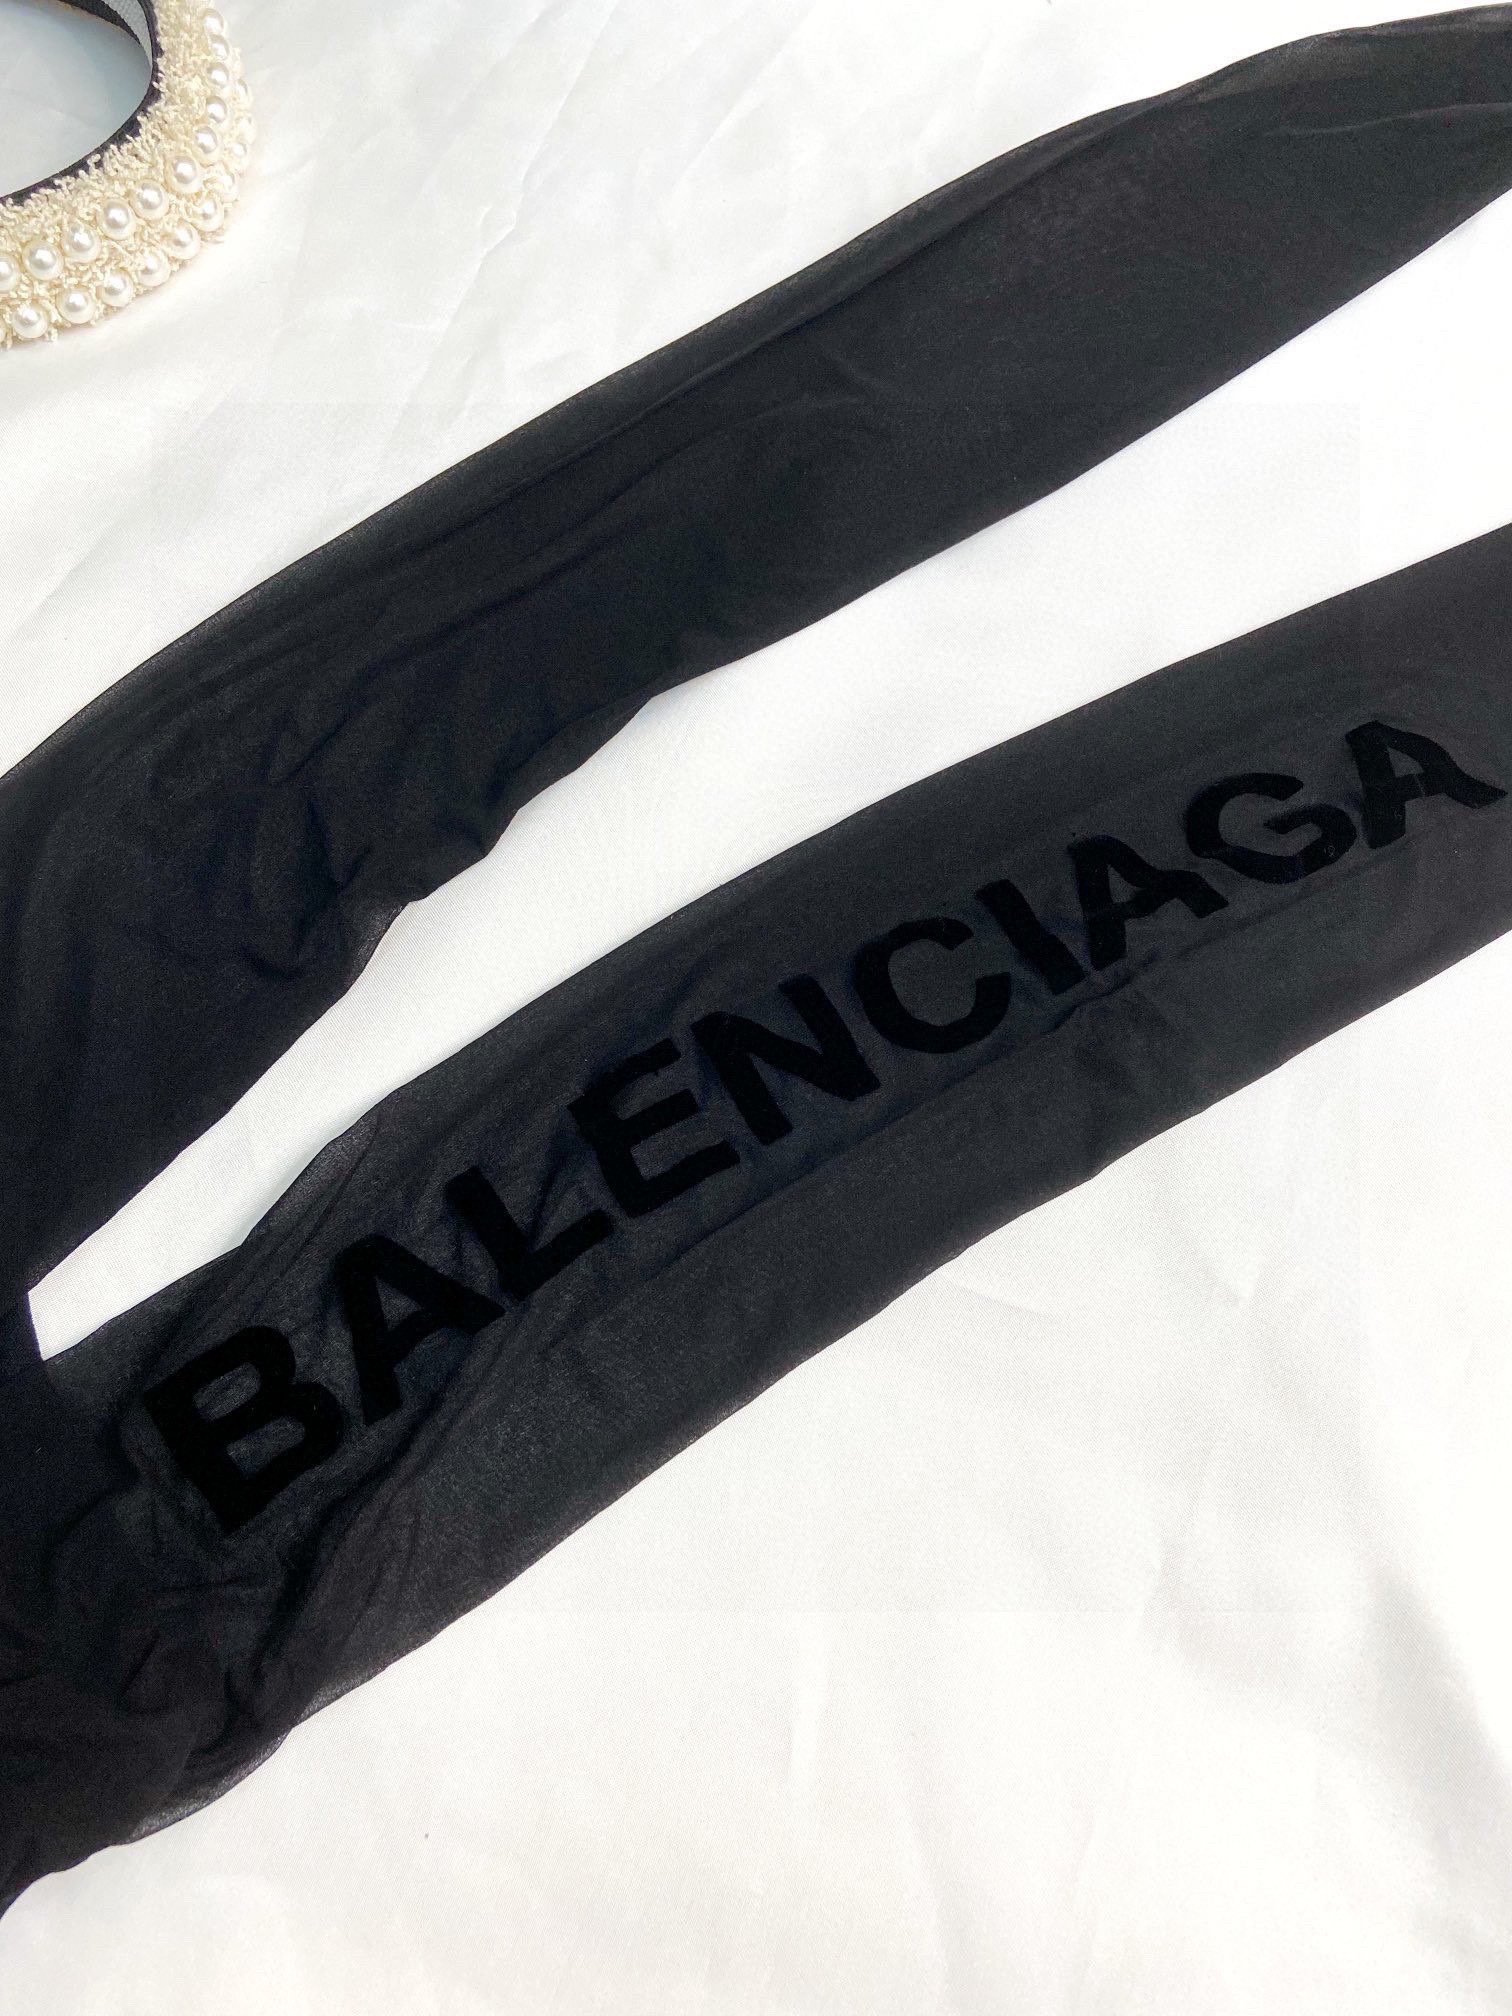 配包装一盒一双Balenciaga巴黎世家植绒字母丝袜好看到爆炸欧美大牌丝袜一比一高版本制作可以看得到的